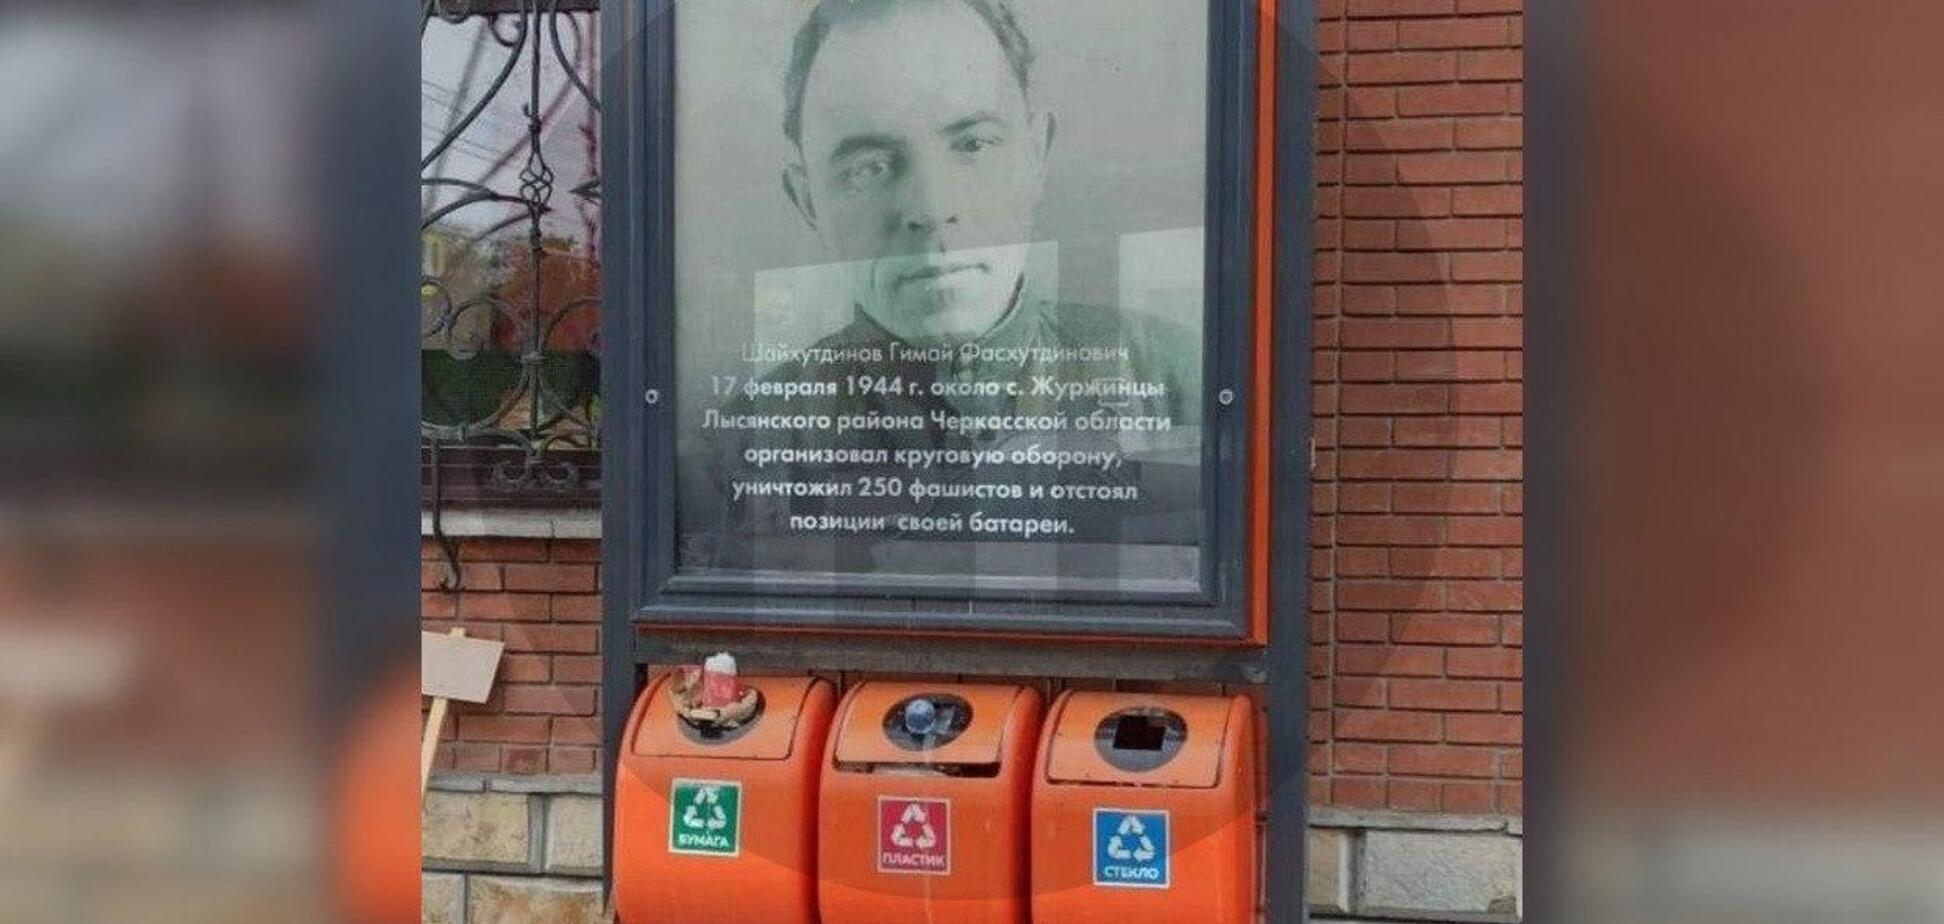 В Уфе плакат герою ВОВ повесили над мусорными баками. Фото